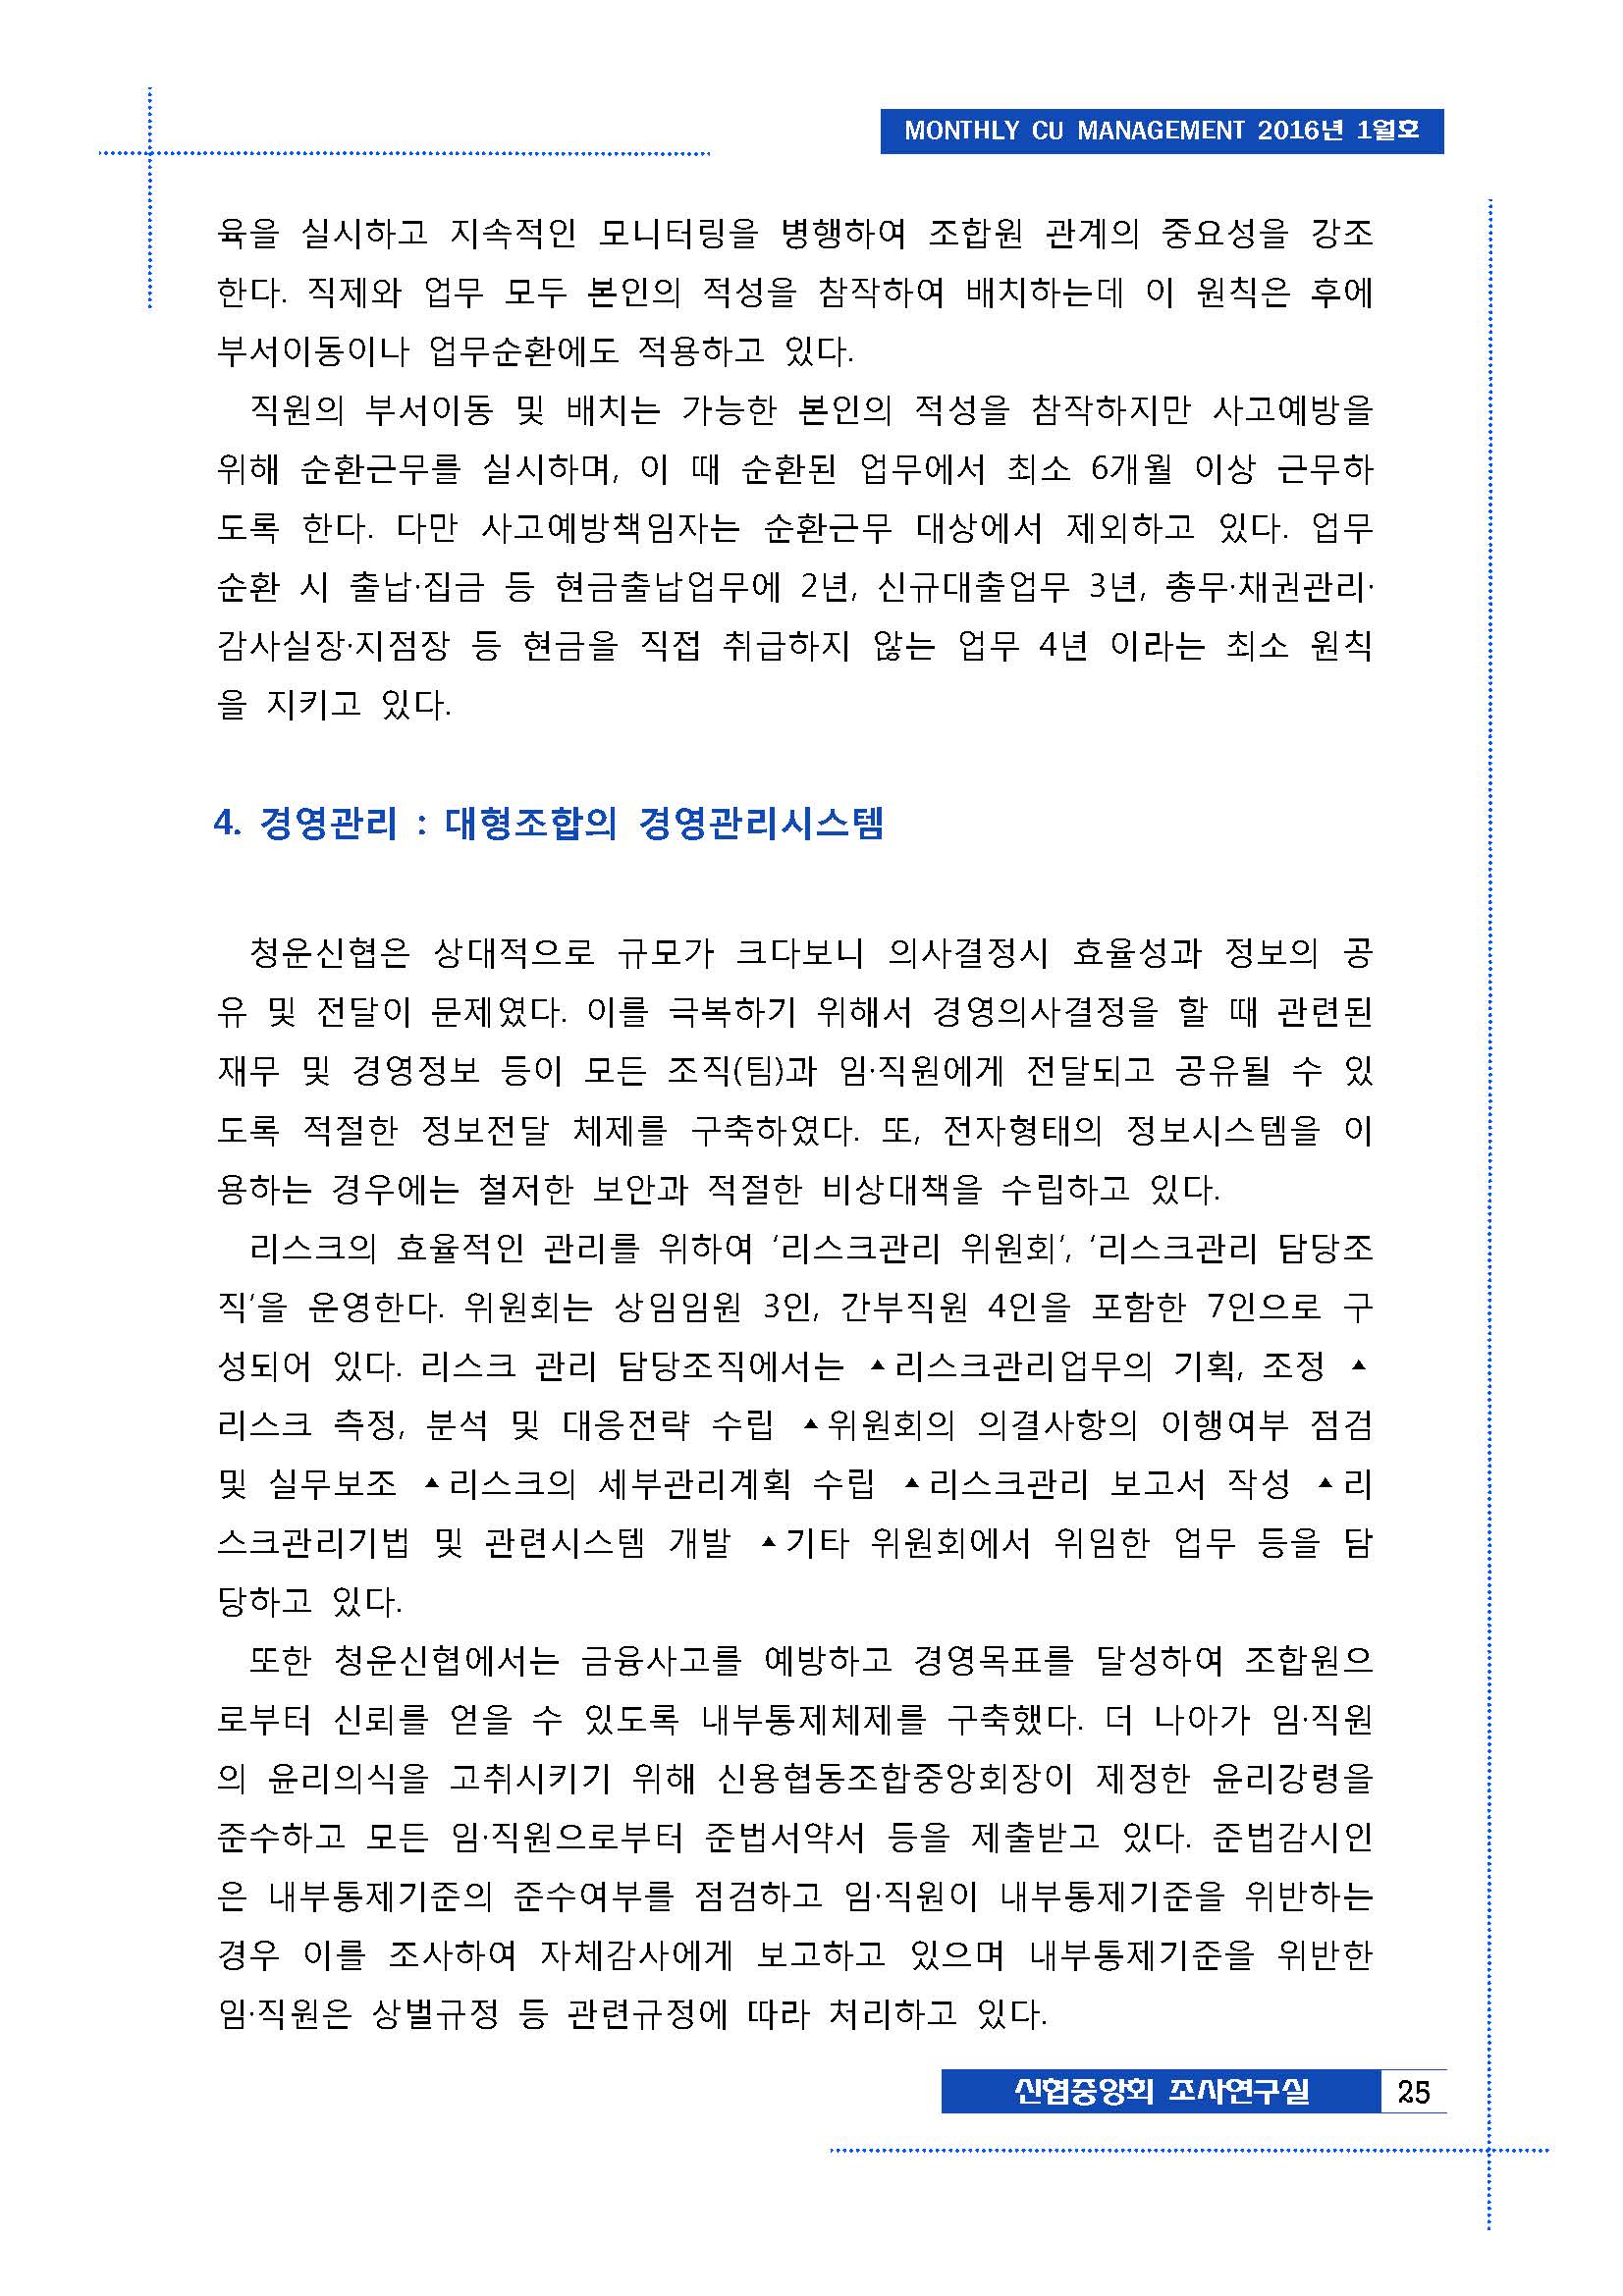 월간경영정보_1월호[1]_페이지_24.jpg